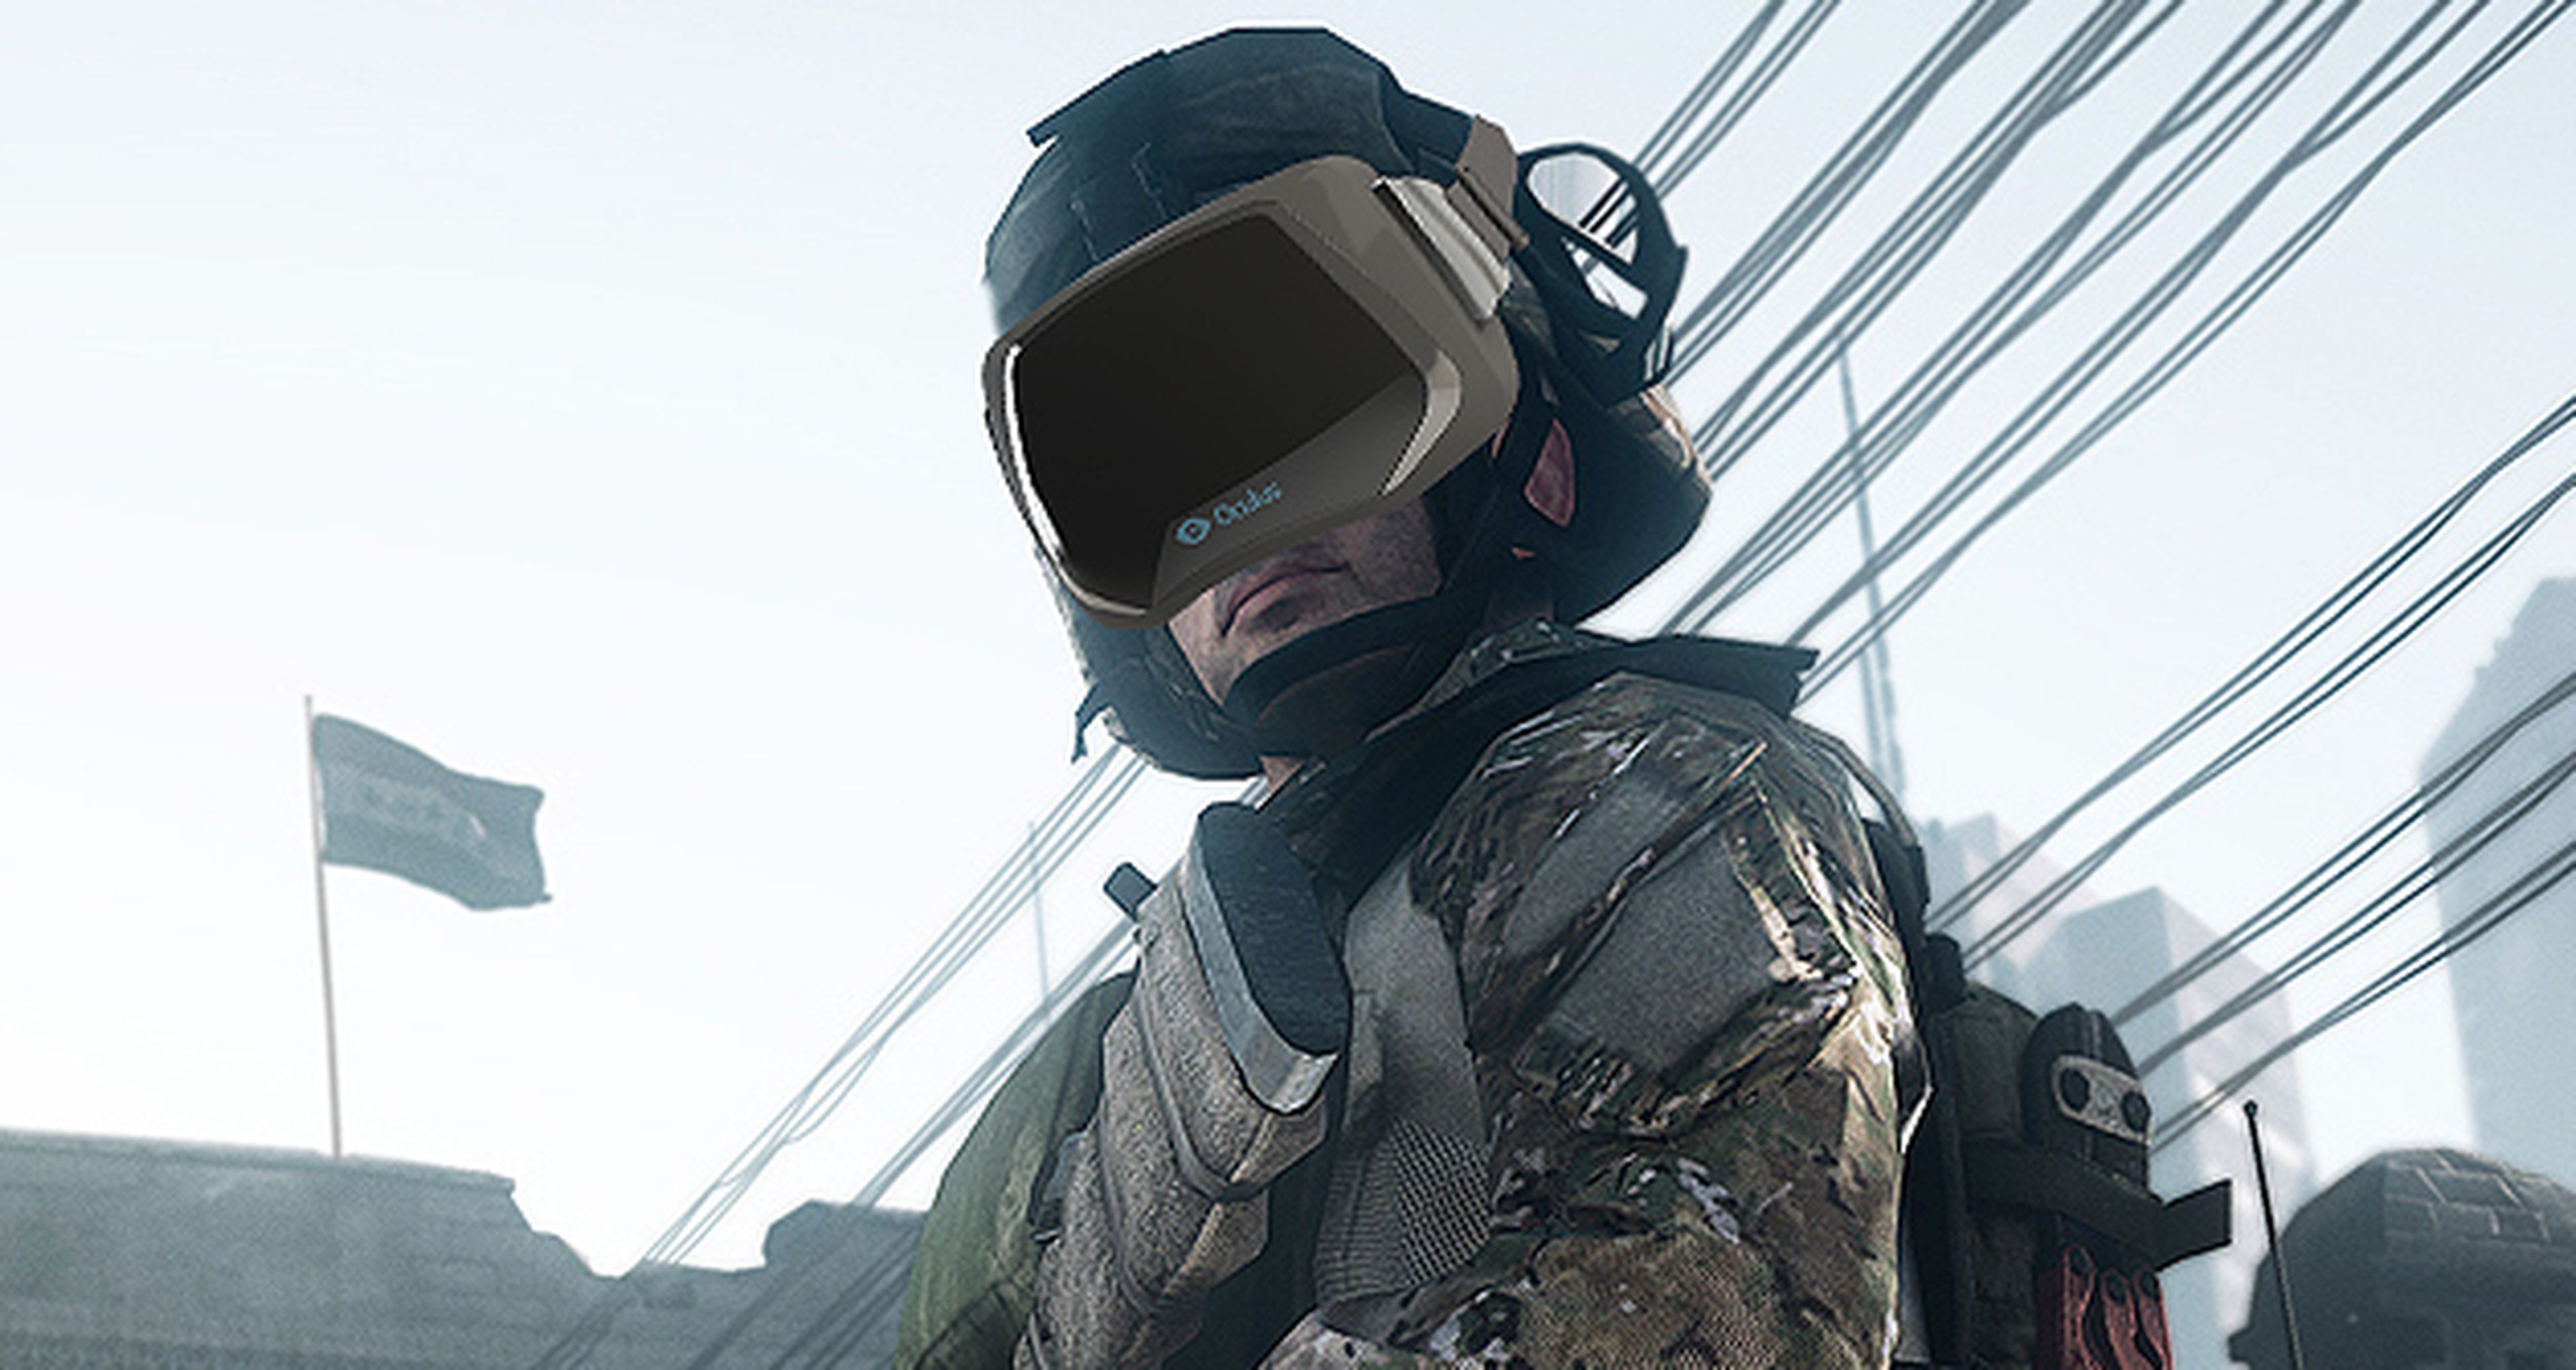 Frostbite busca la compatibilidad con Oculus Rift